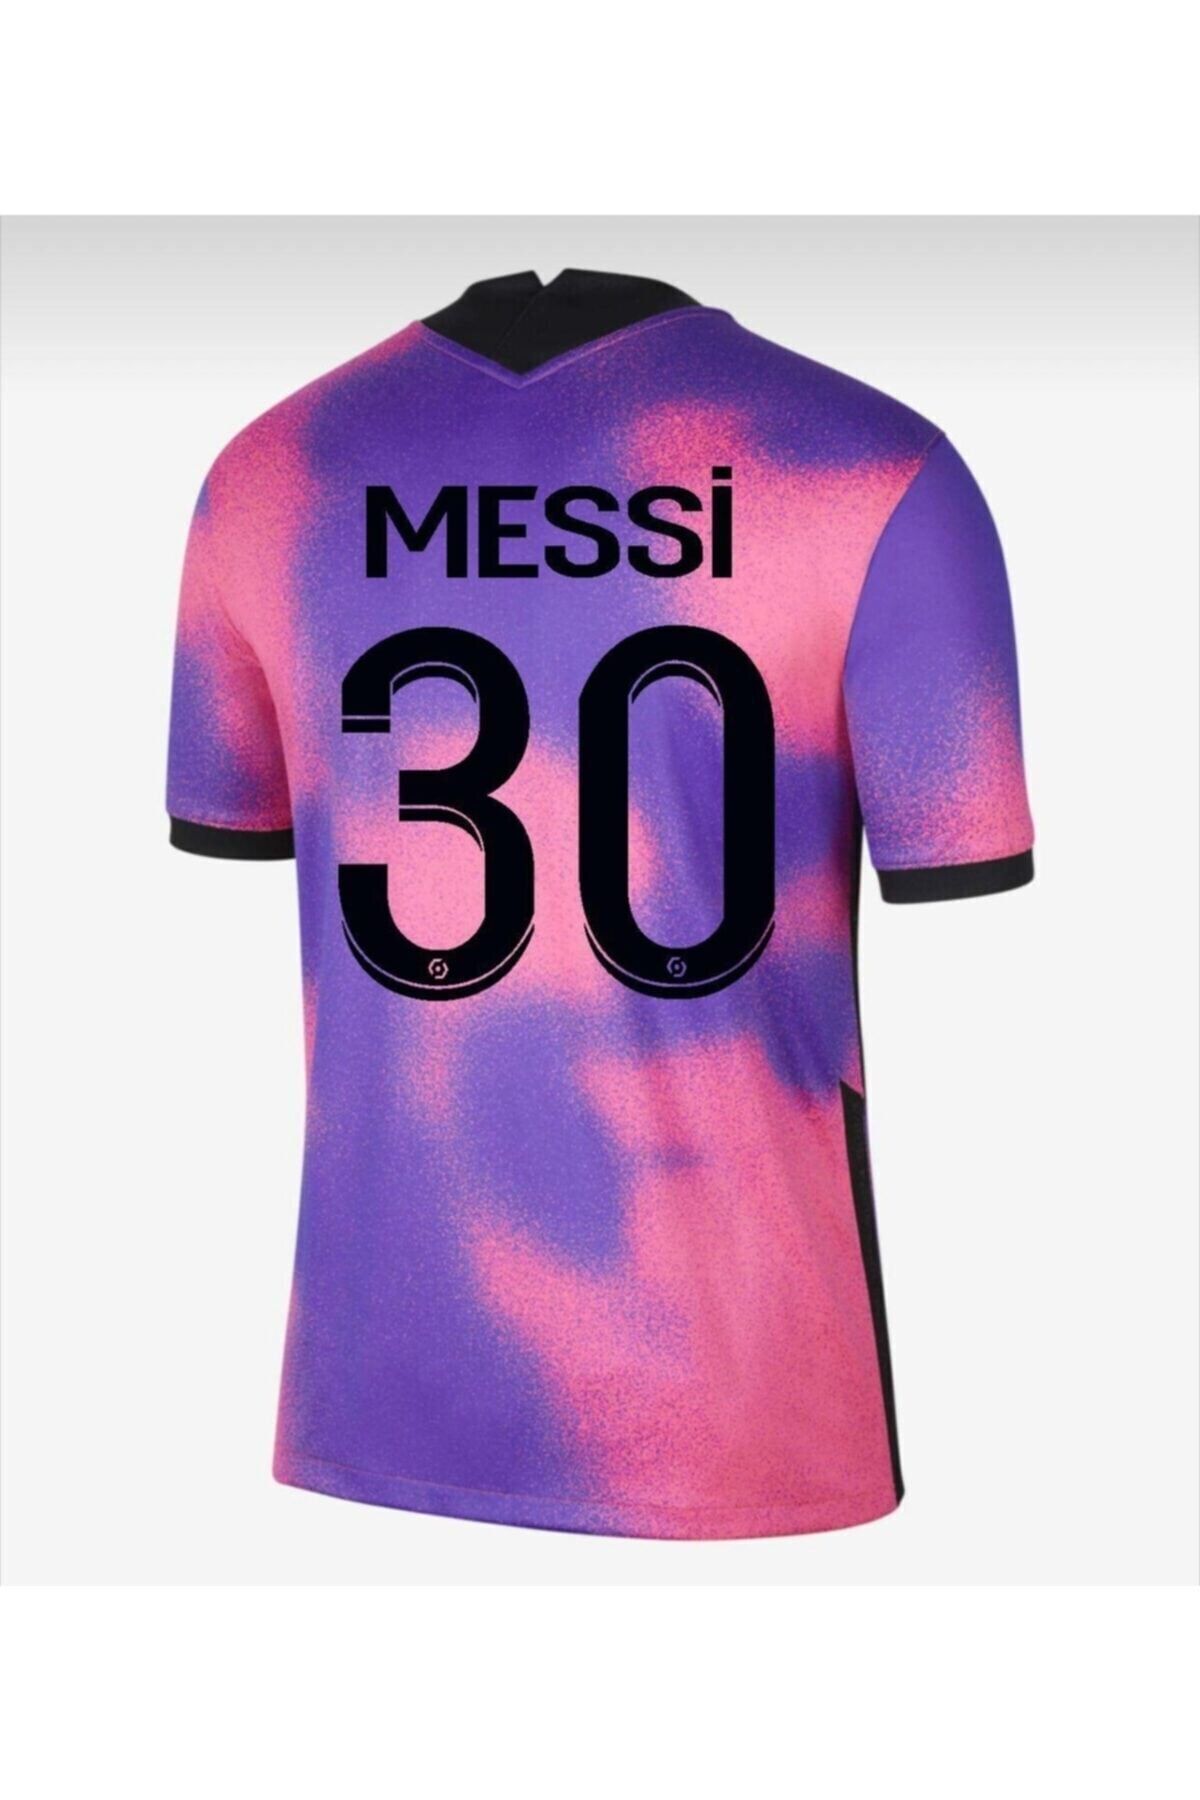 MG Messi Erkek Çocuk Forması Takımı